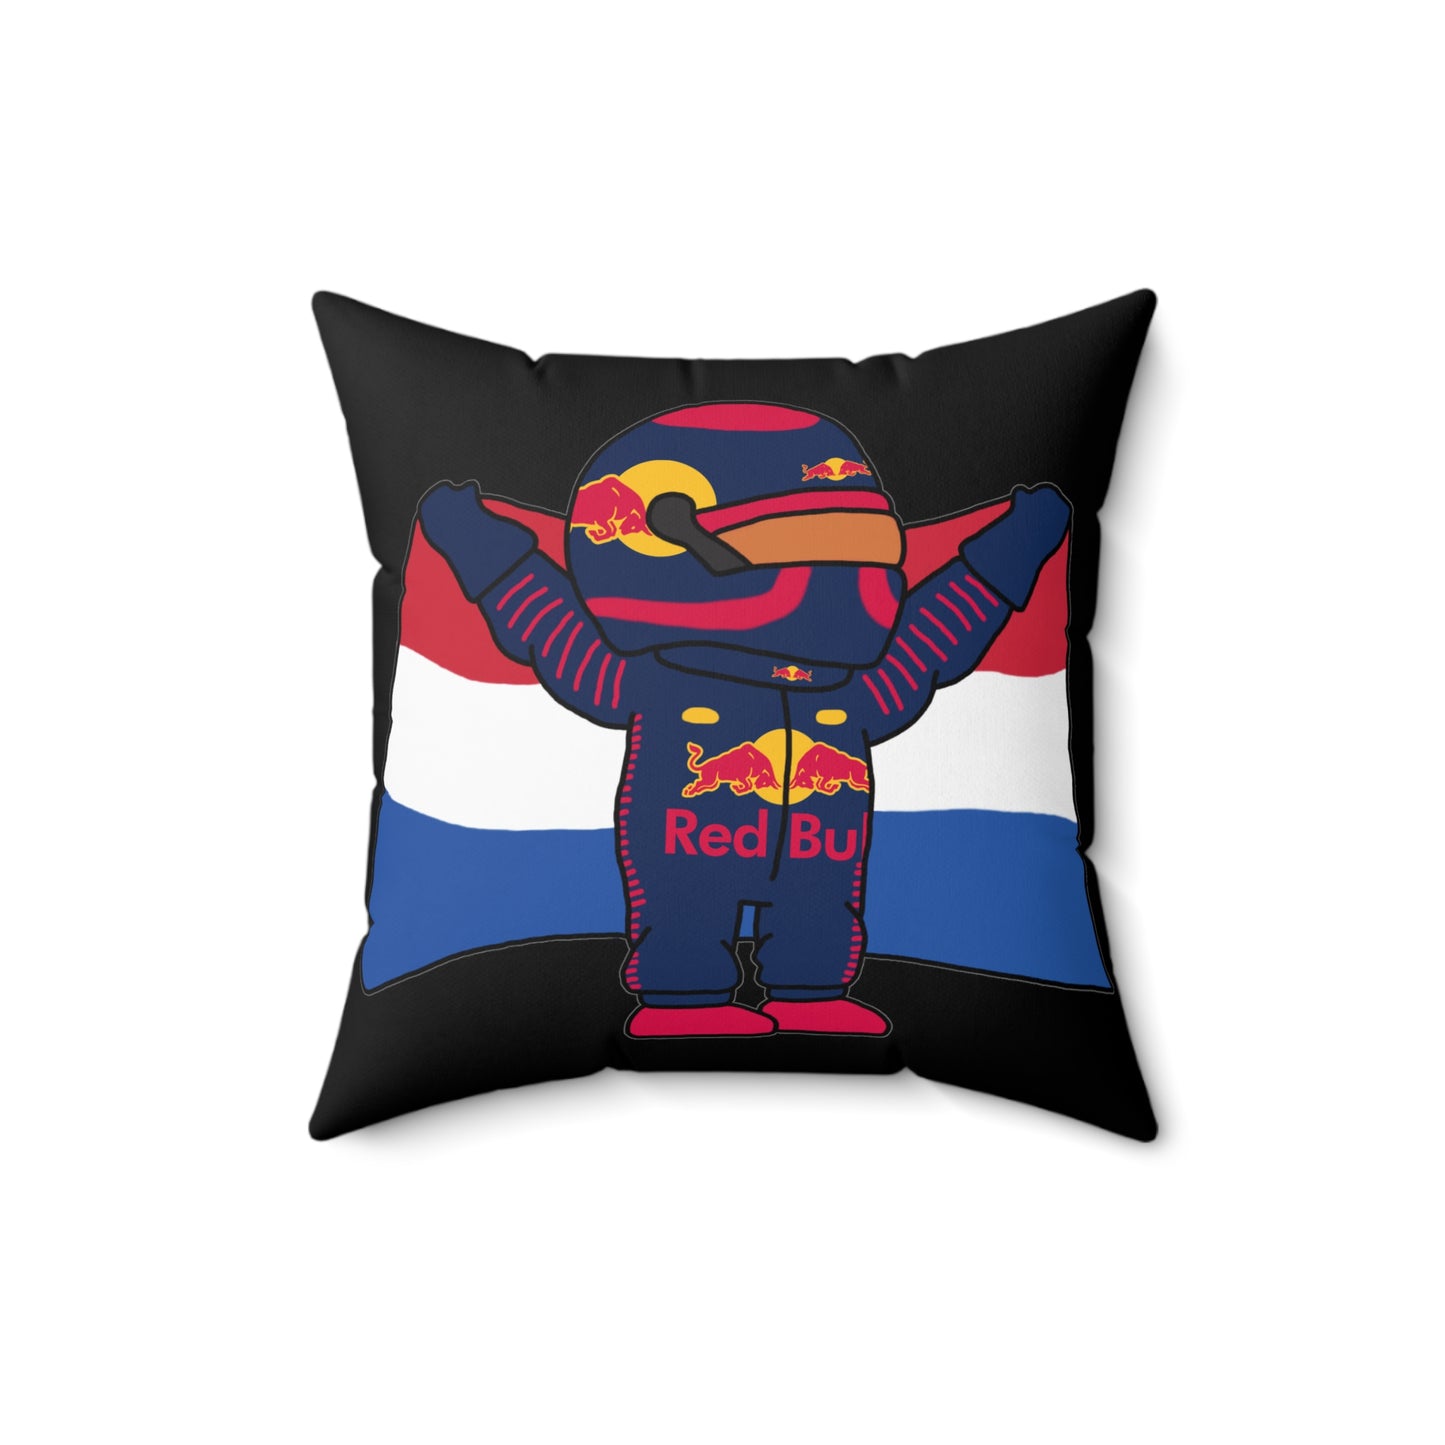 NeVerStappen Red Bull Formula 1 F1 Max Verstappen Pillow Next Cult Brand F1, Max Verstappen, Red Bull